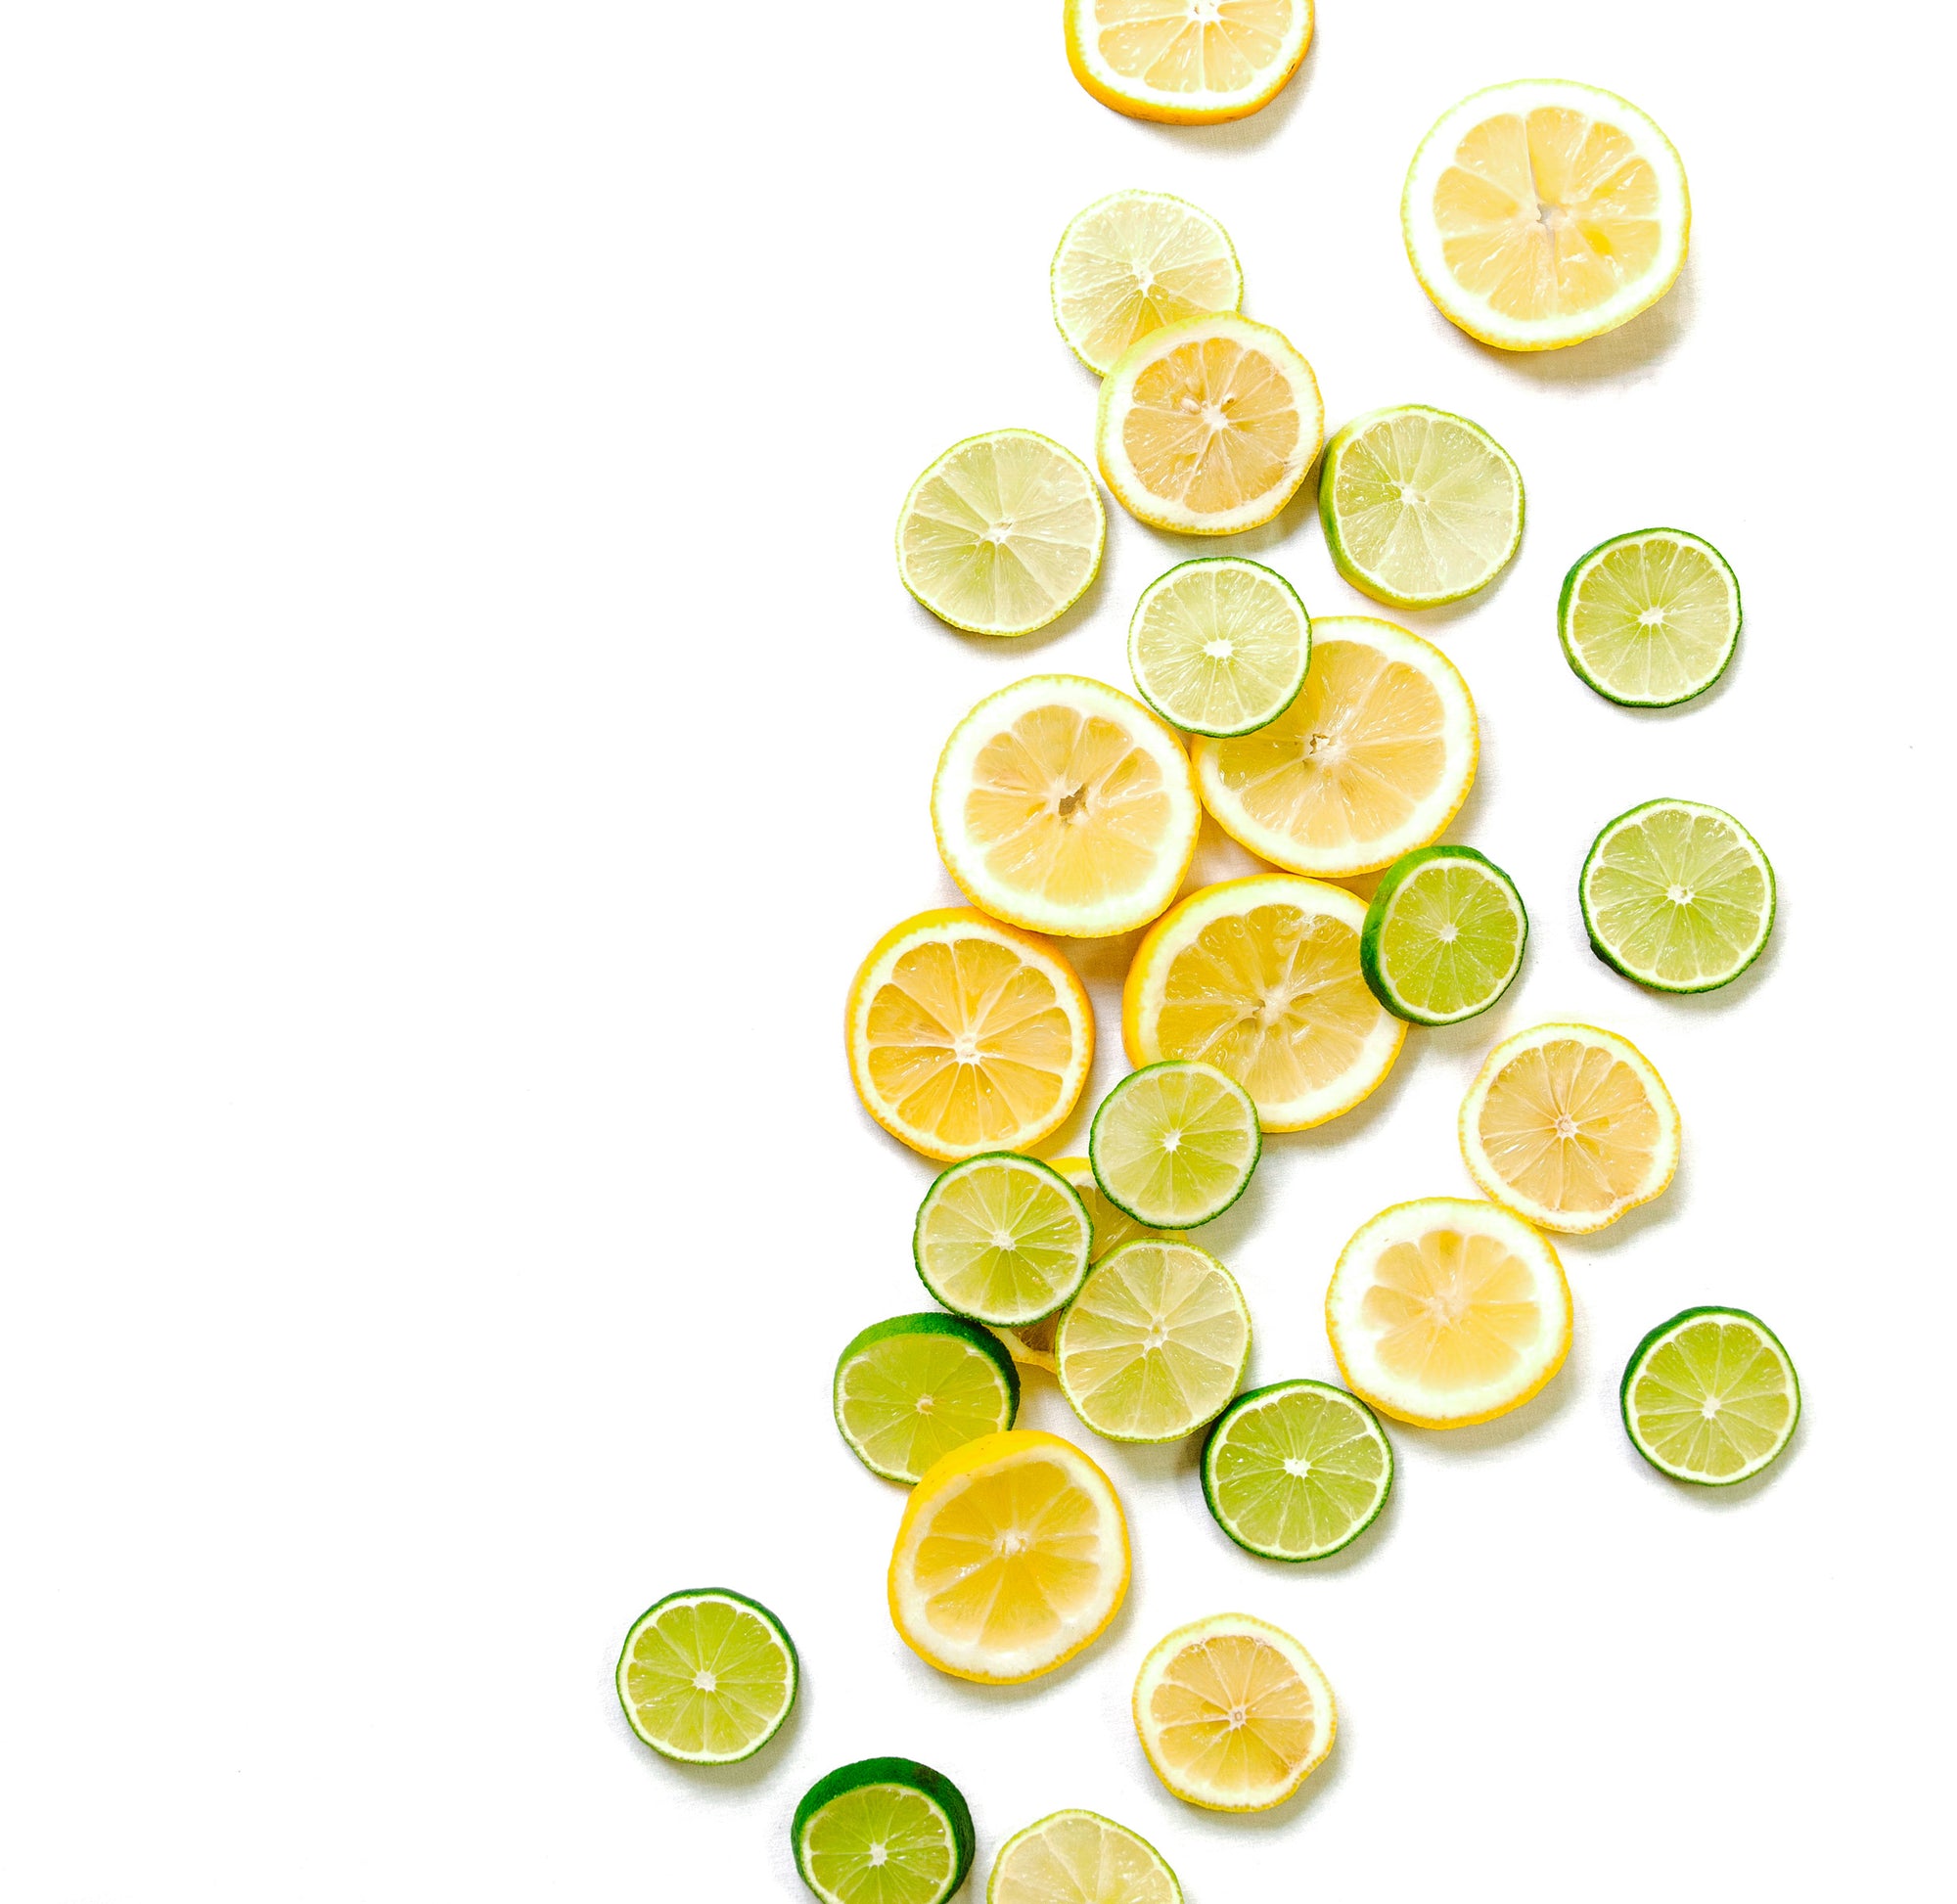 Quand la vie vous donne des citrons, faites de la limonade ... ou des smoothies aux superaliments !